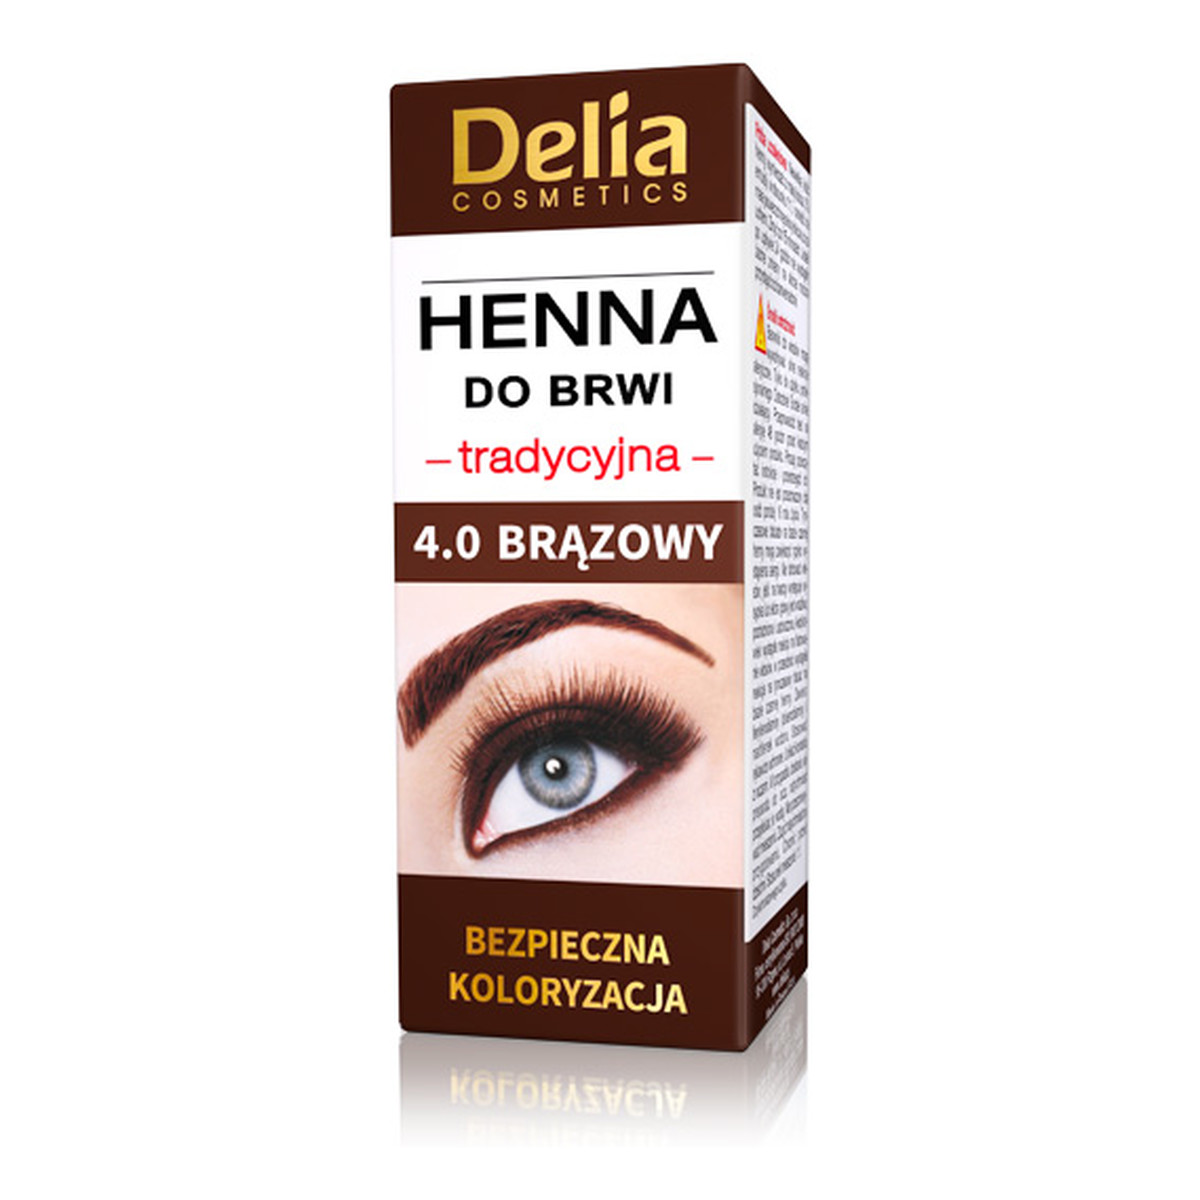 Delia Henna Henna Tradycyjna Do Brwi 4.0 (Brązowa)